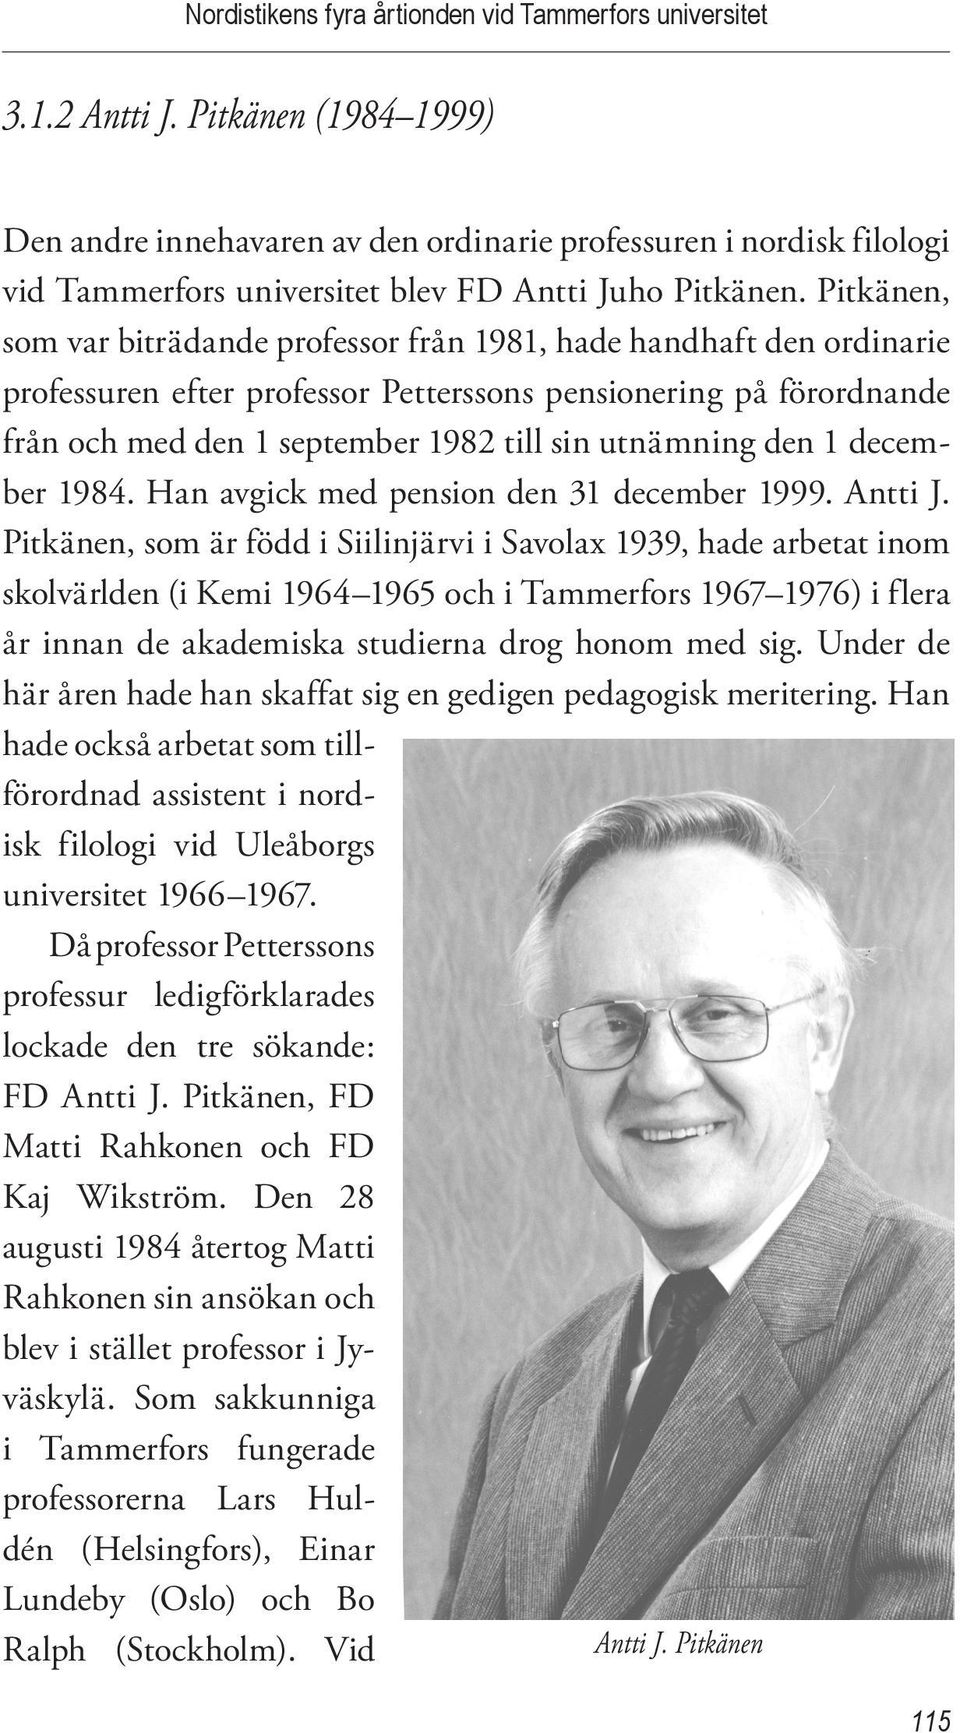 Pitkänen, som var biträdande professor från 1981, hade handhaft den ordinarie professuren efter professor Petterssons pensionering på förordnande från och med den 1 september 1982 till sin utnämning